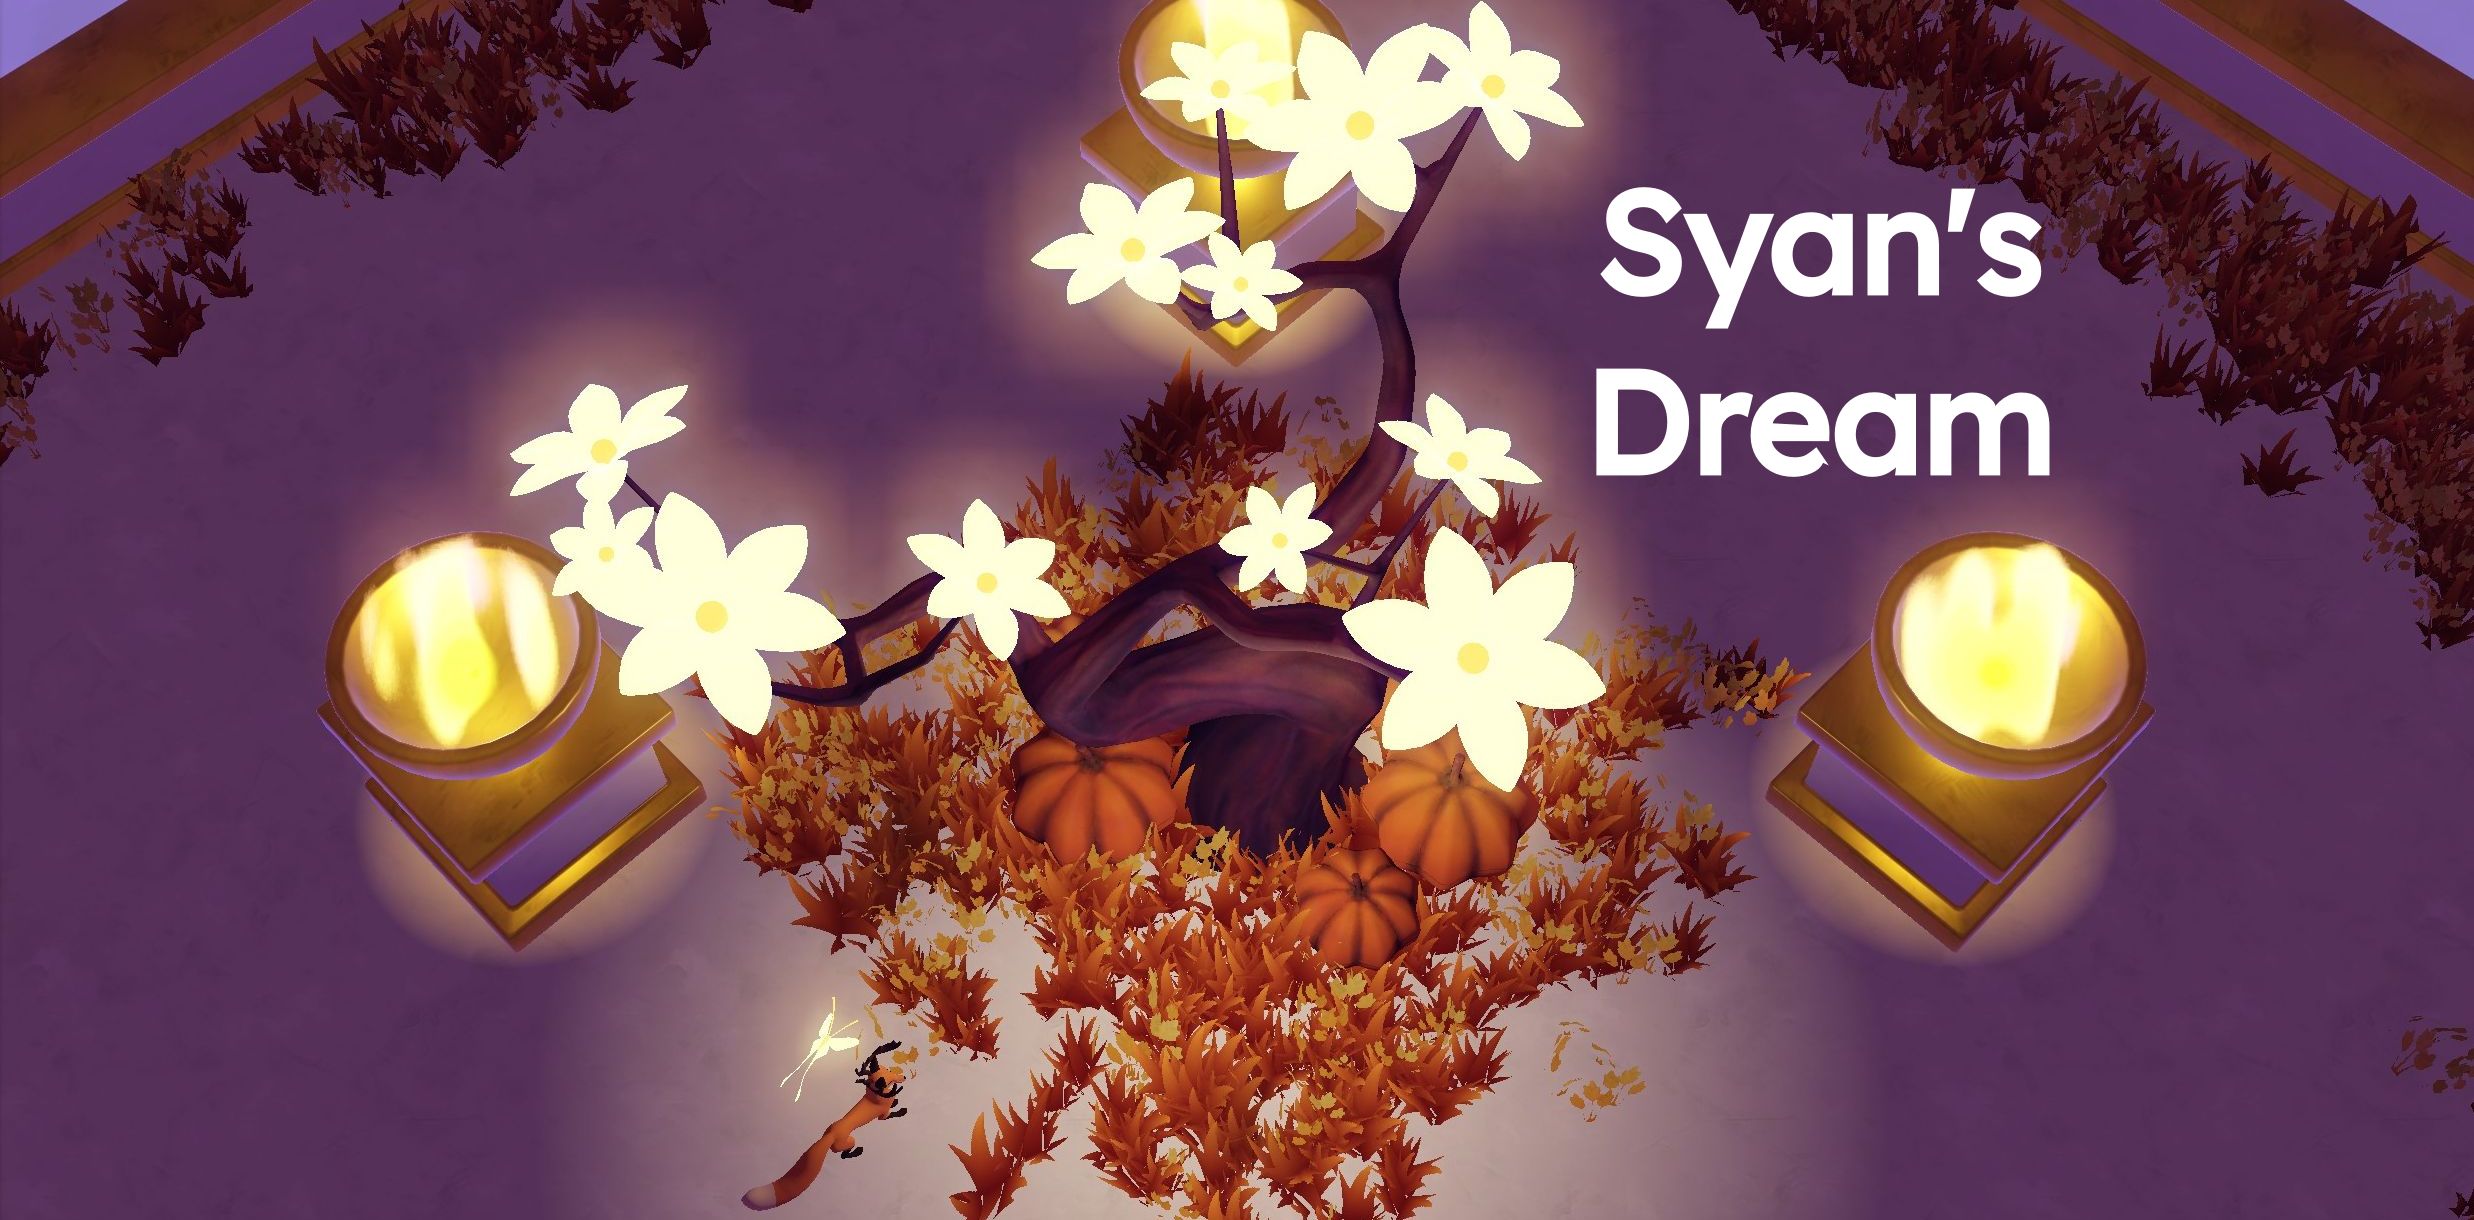 Syan's Dream